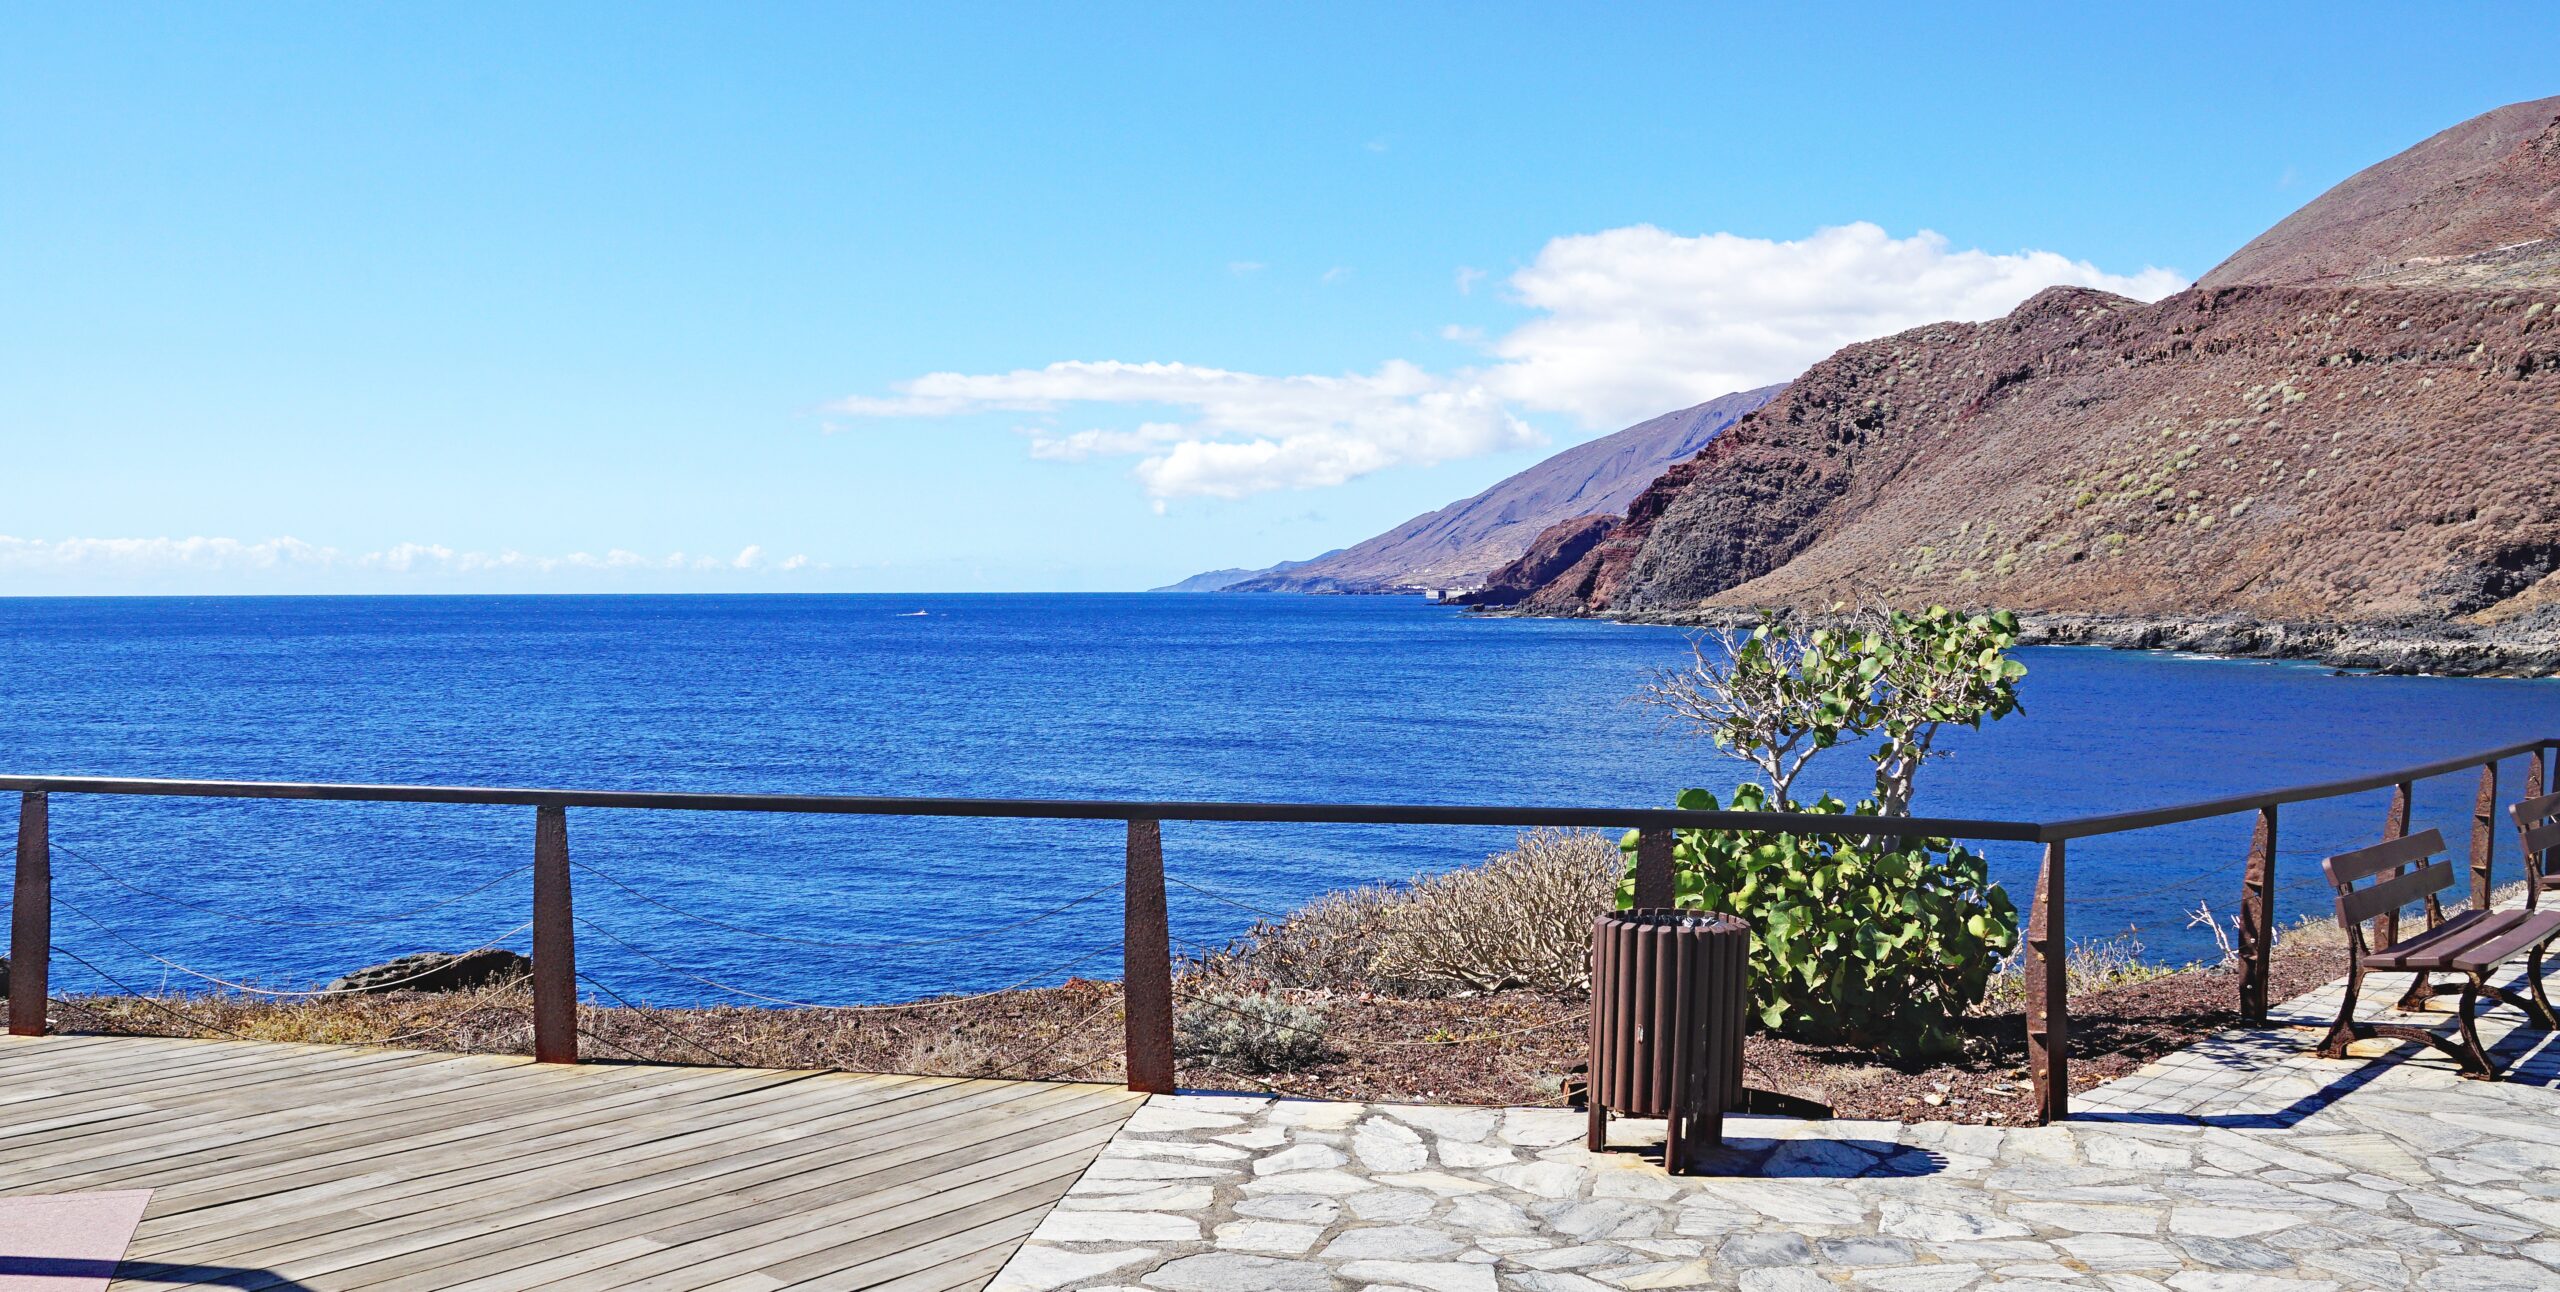 Promenada i baseny La Caleta, Valverde, El Hierro, Santa Cruz de Tenerife, Wyspy Kanaryjskie